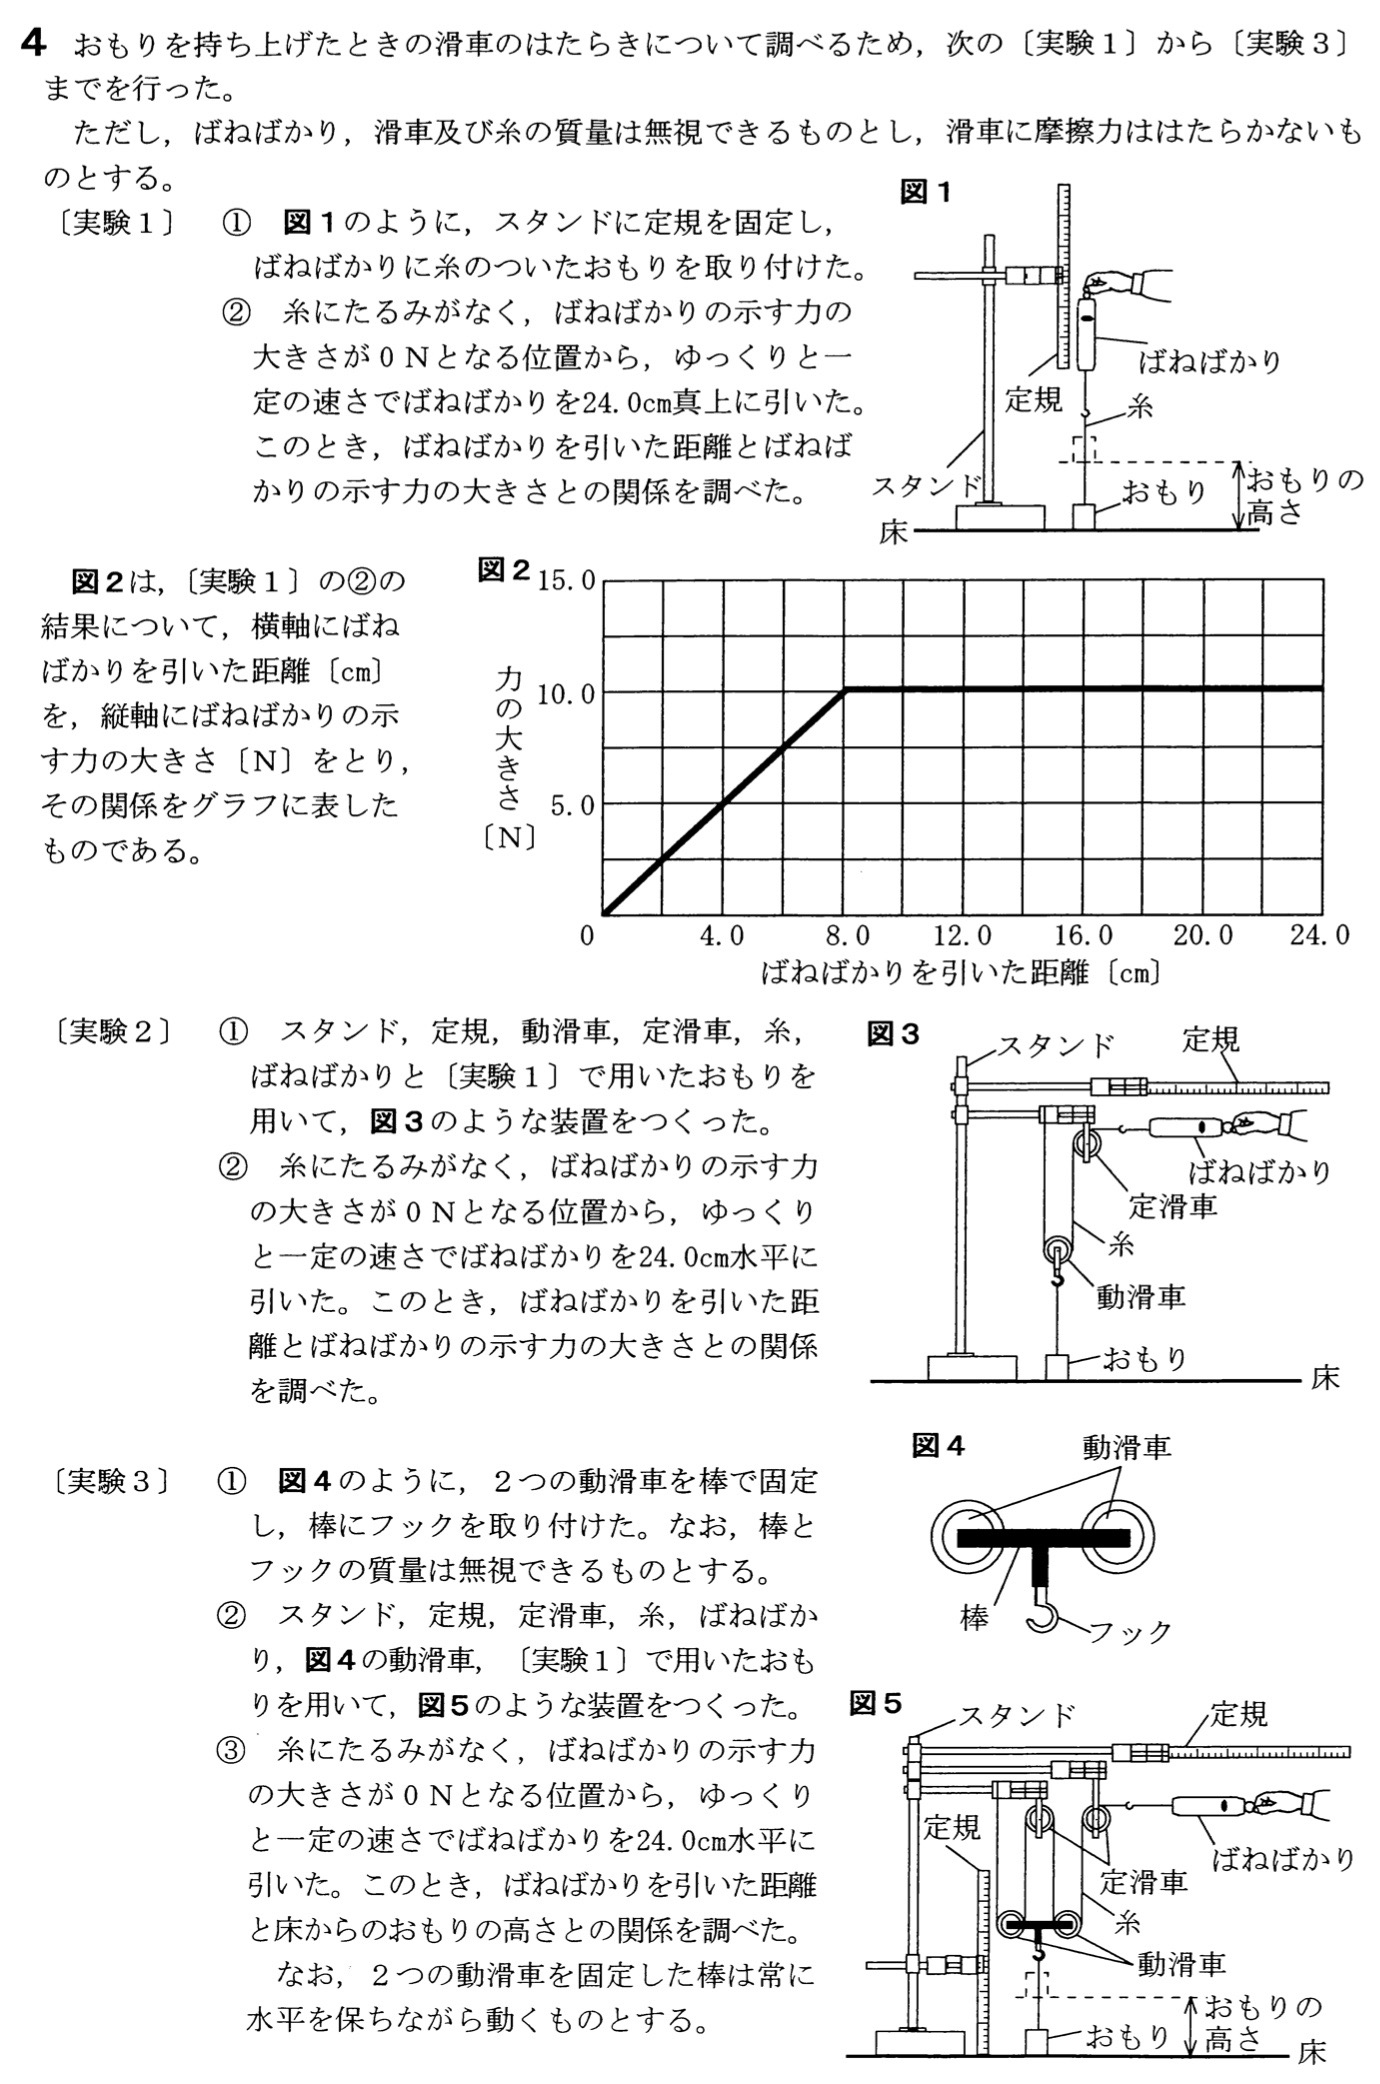 愛知県(B日程)公立高校入試理科2022年(令和4年)過去問題